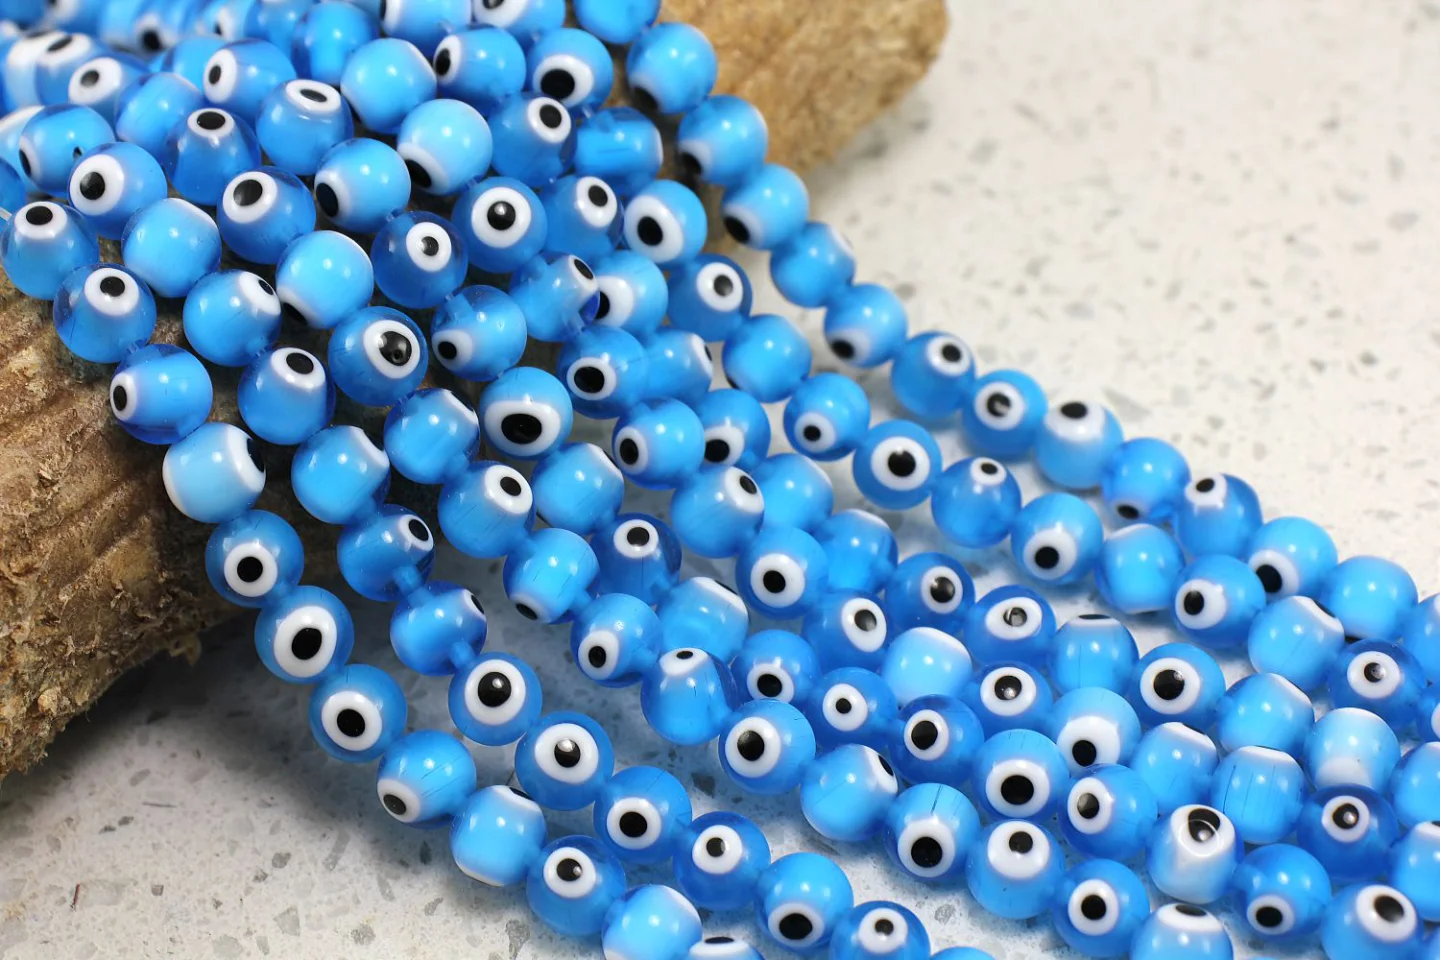 8mm-blue-glass-evil-eye-beads.